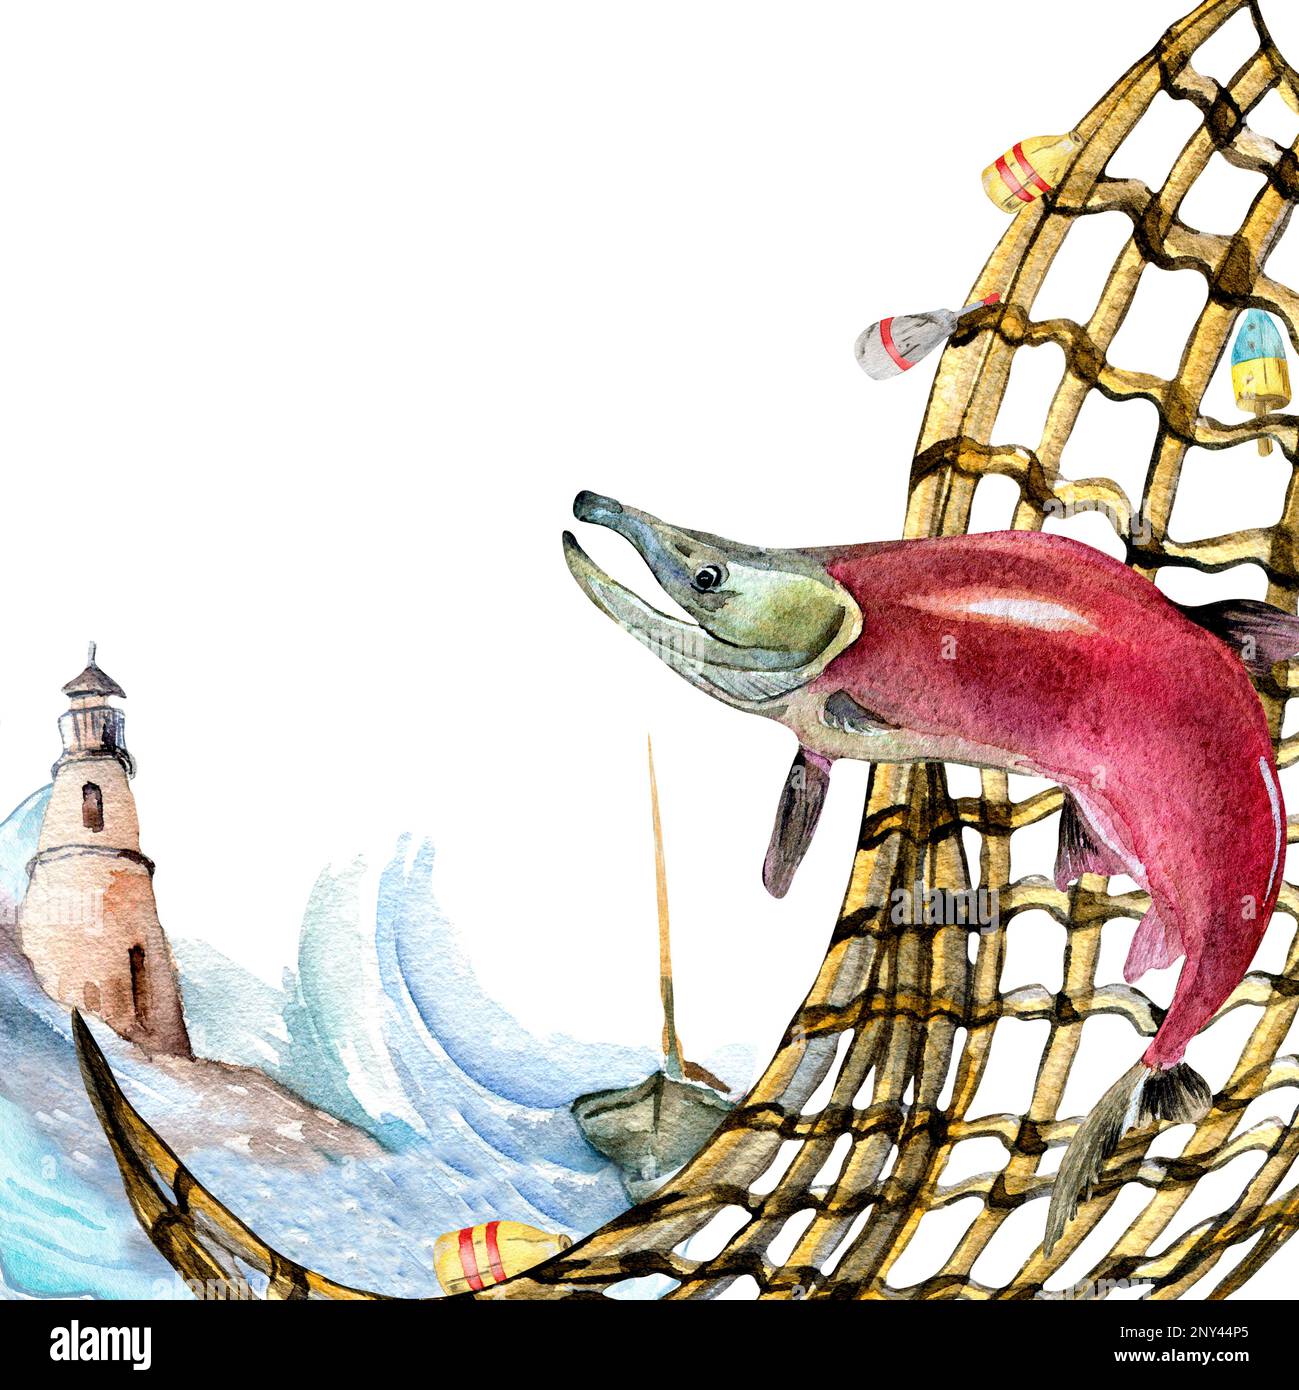 Composition de l'aquarelle du saumon, du coho et du fishnet isolée sur le blanc. Poisson frais, voilier, paysage marin dessiné à la main. Elément de conception pour packa Banque D'Images